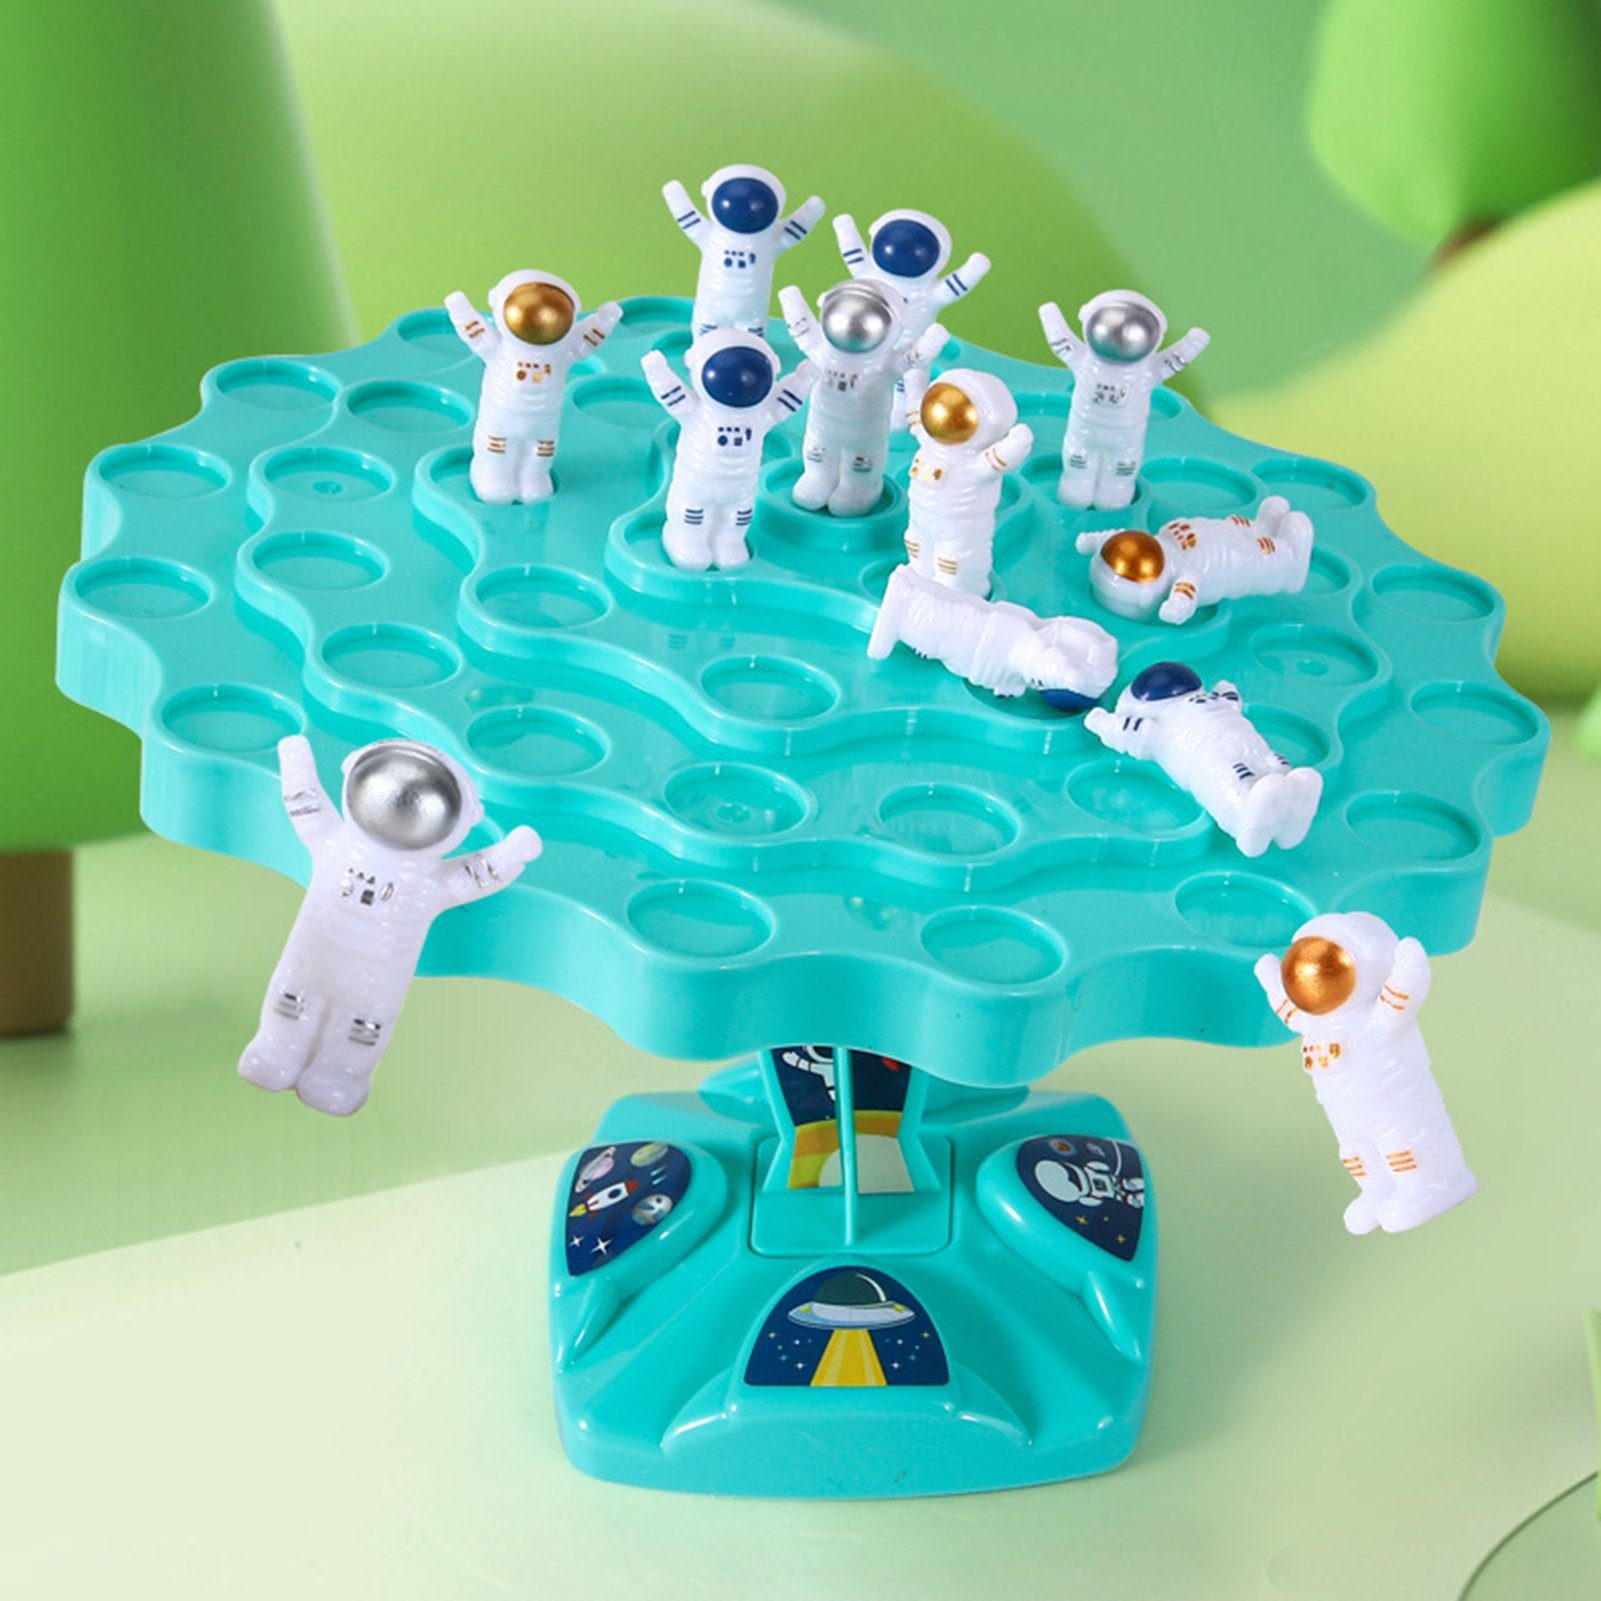 (Astronauten-Design-Erleuchtungspuzzle), Game Rutaqian Lernspielzeug Geburtstagsgeschenke Spiele Vorschulalter, Für Balancing , Tree im und Reisespielzeug Blau Kinder